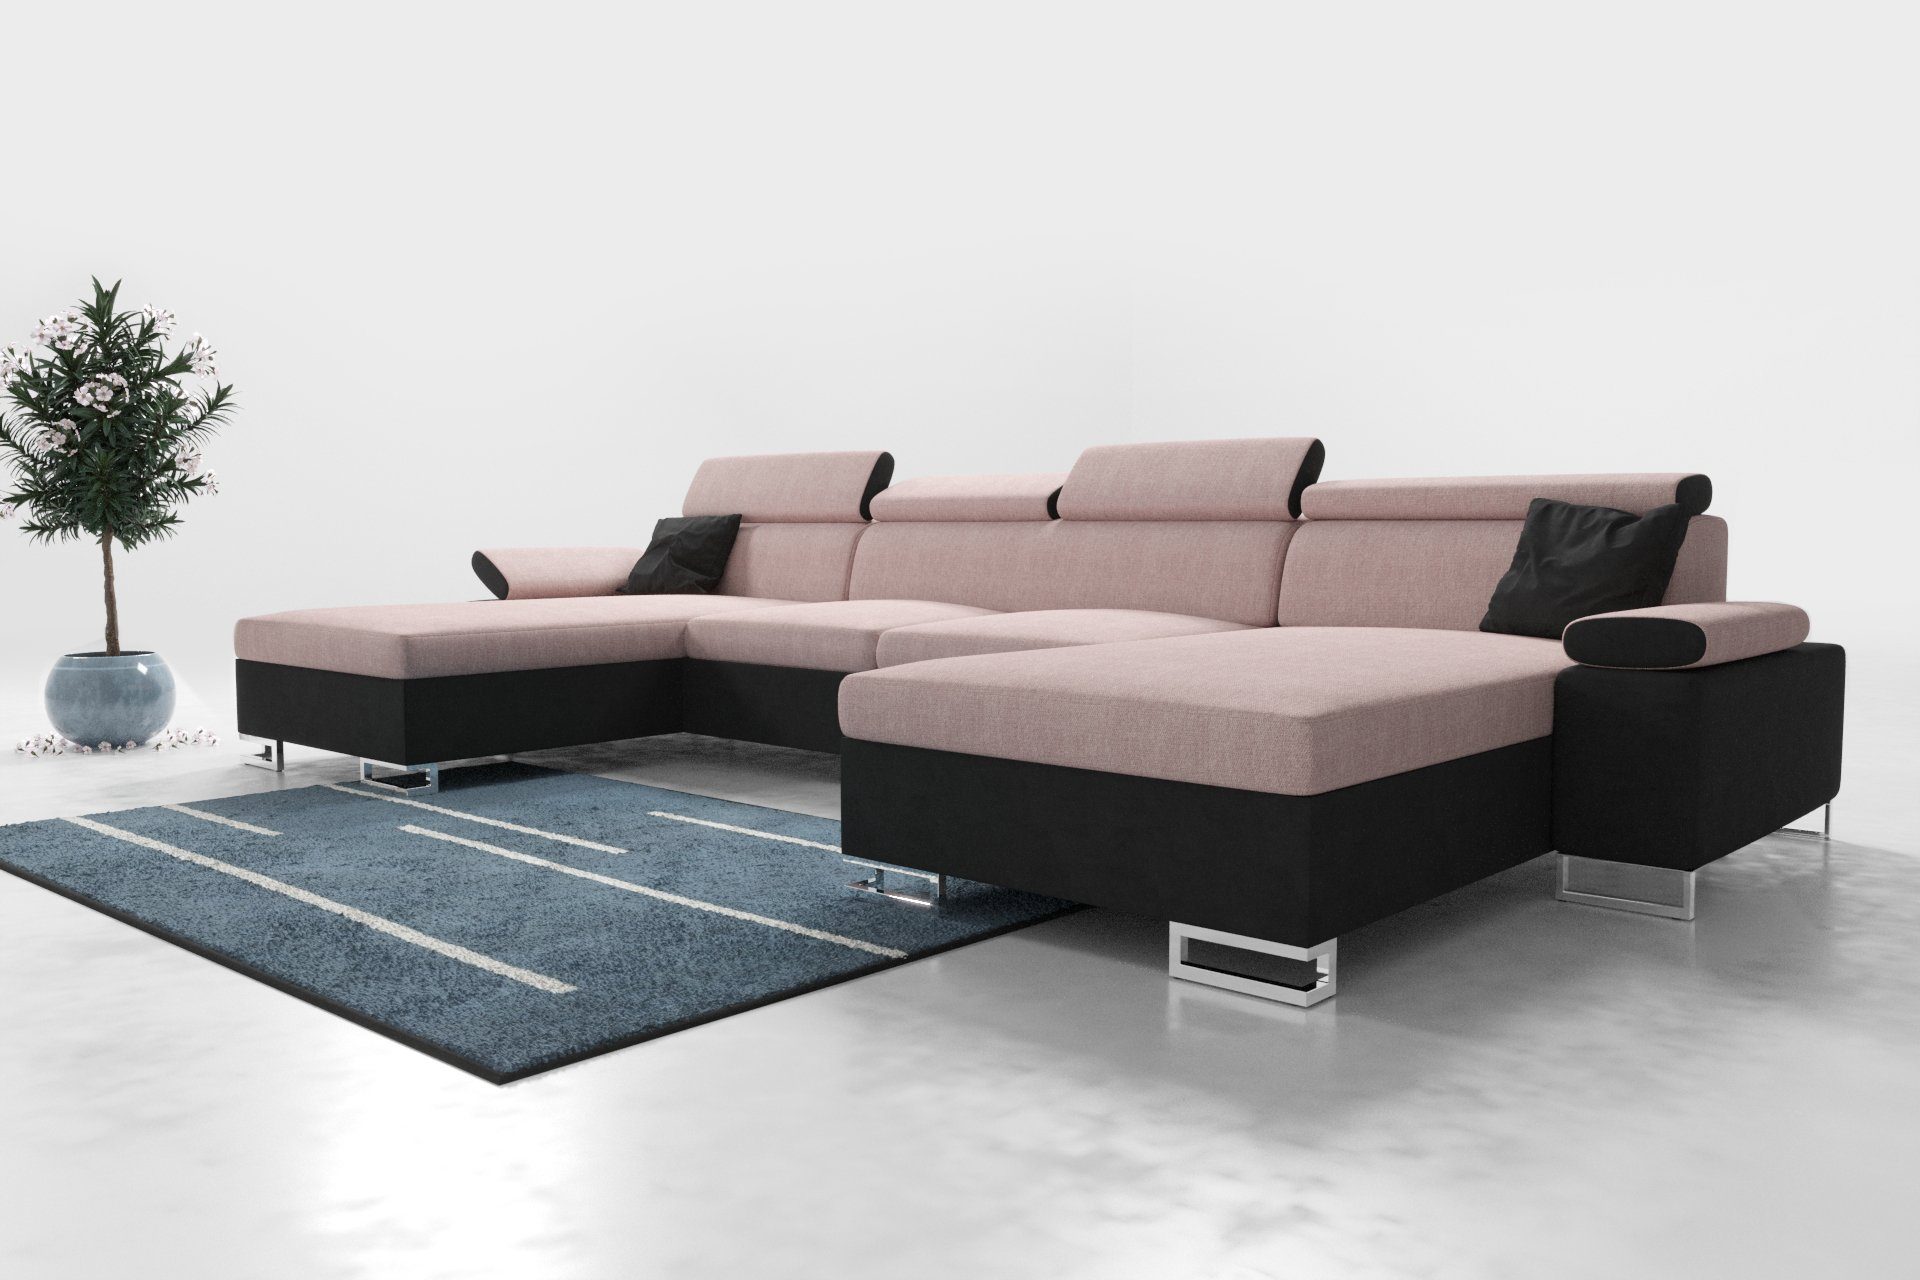 ROYAL24_MARKT Polstergarnitur Moderne Eleganz: Polsterecke Ecksofa 260 CU1, (Premium Couchgarnitur, mit Schlaffunktion und Stauraum), - Integrierter Stauraum - Schlaffunktion - Hochwertige Materialien Rosa - Schwarz